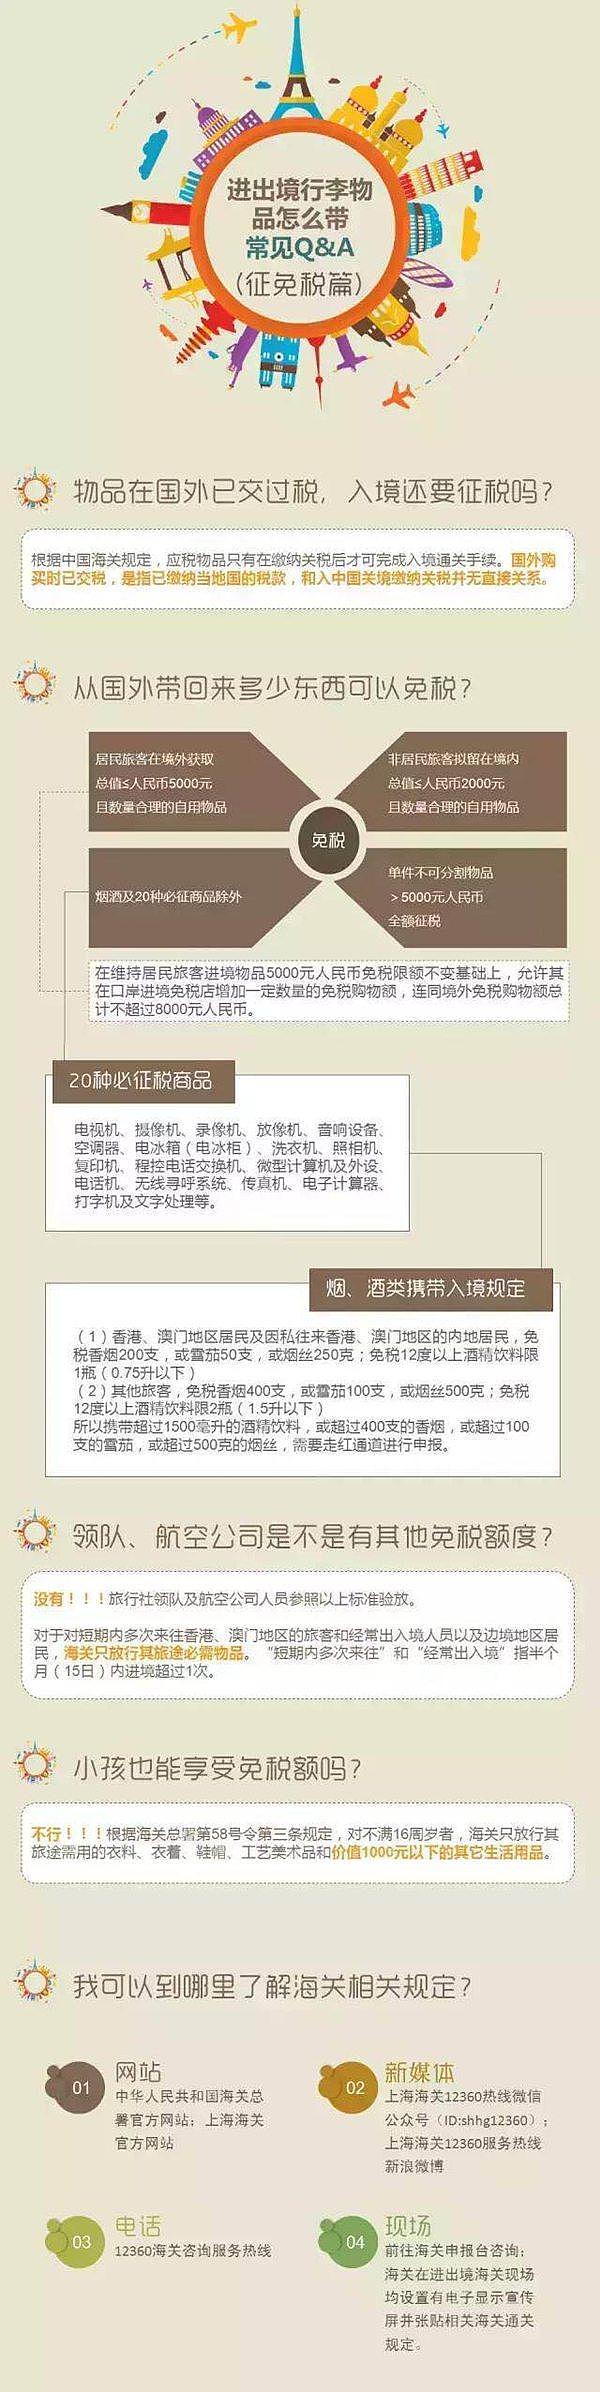 上海海关回应查代购:个人携带入境物品政策无变动